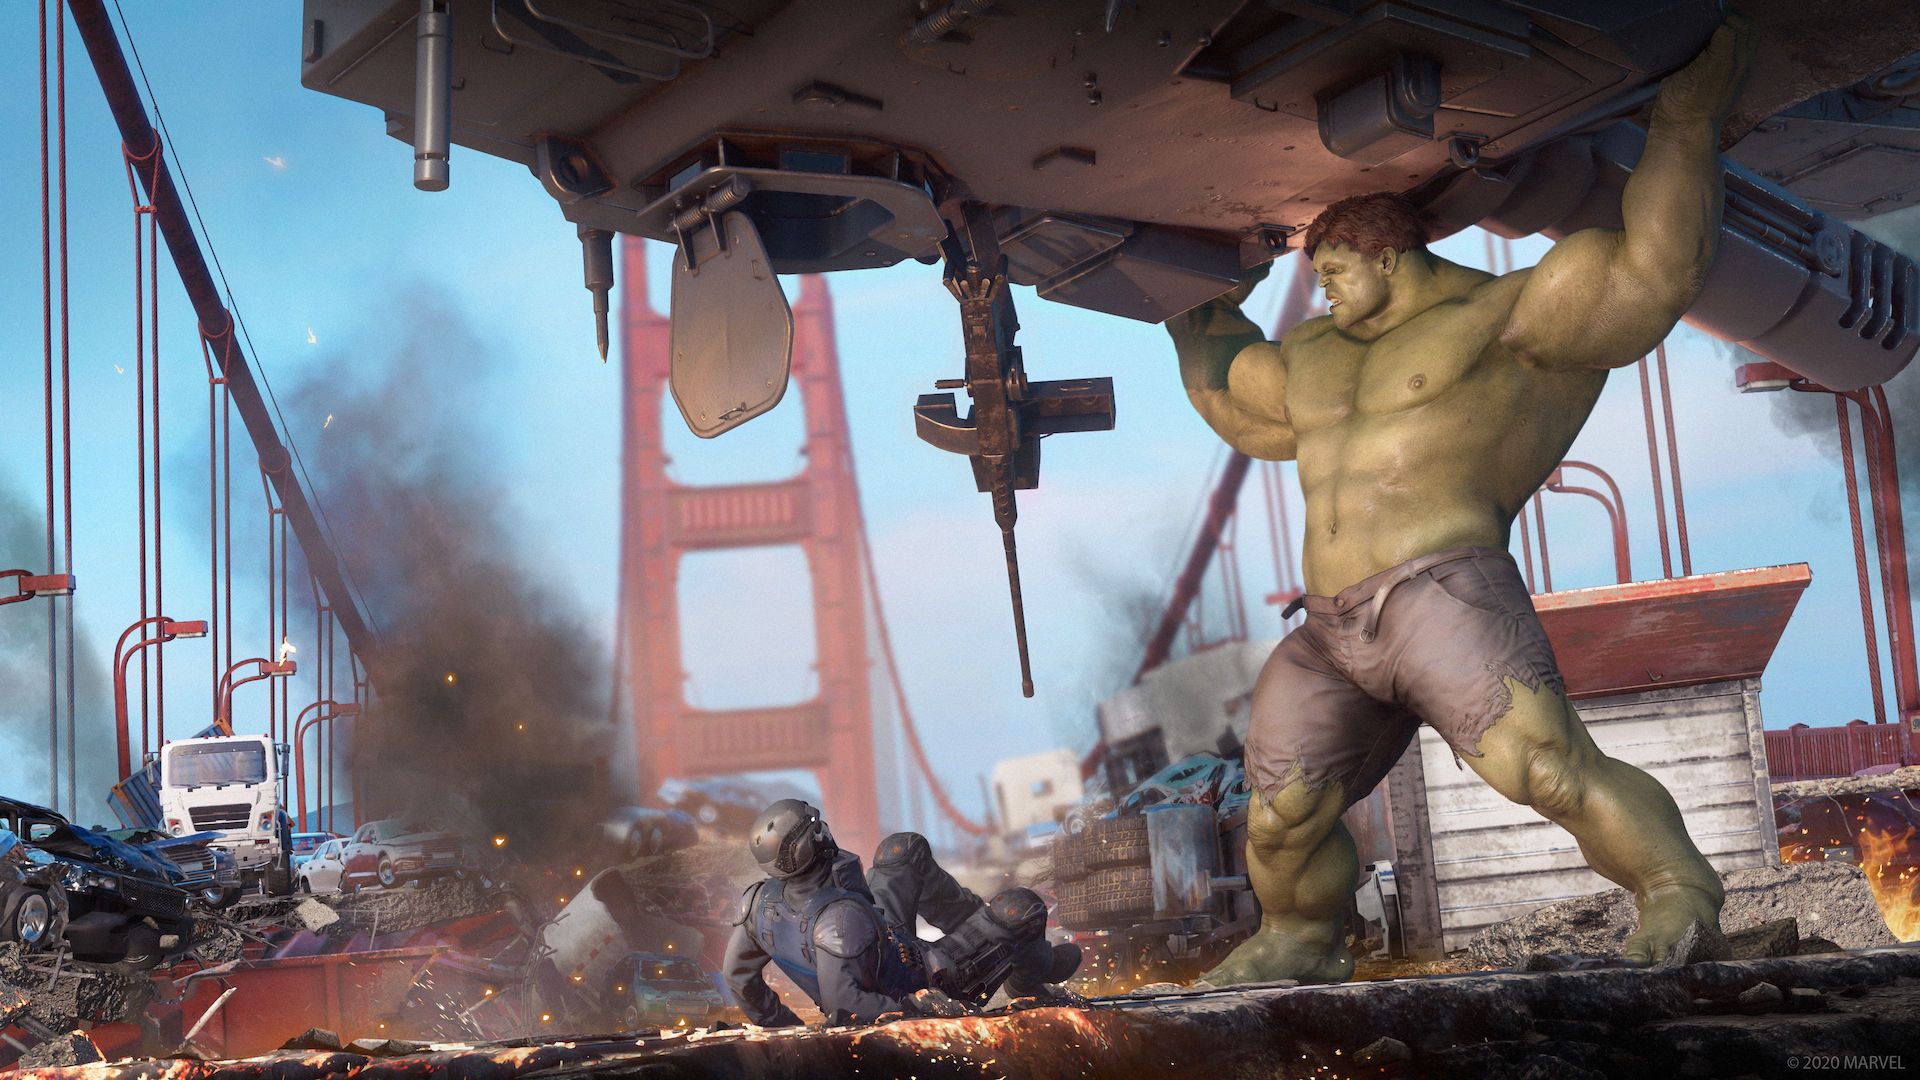 Hulk di Marvel's Avengers vole insignà vi cumu si sparghje in u video umoristicu